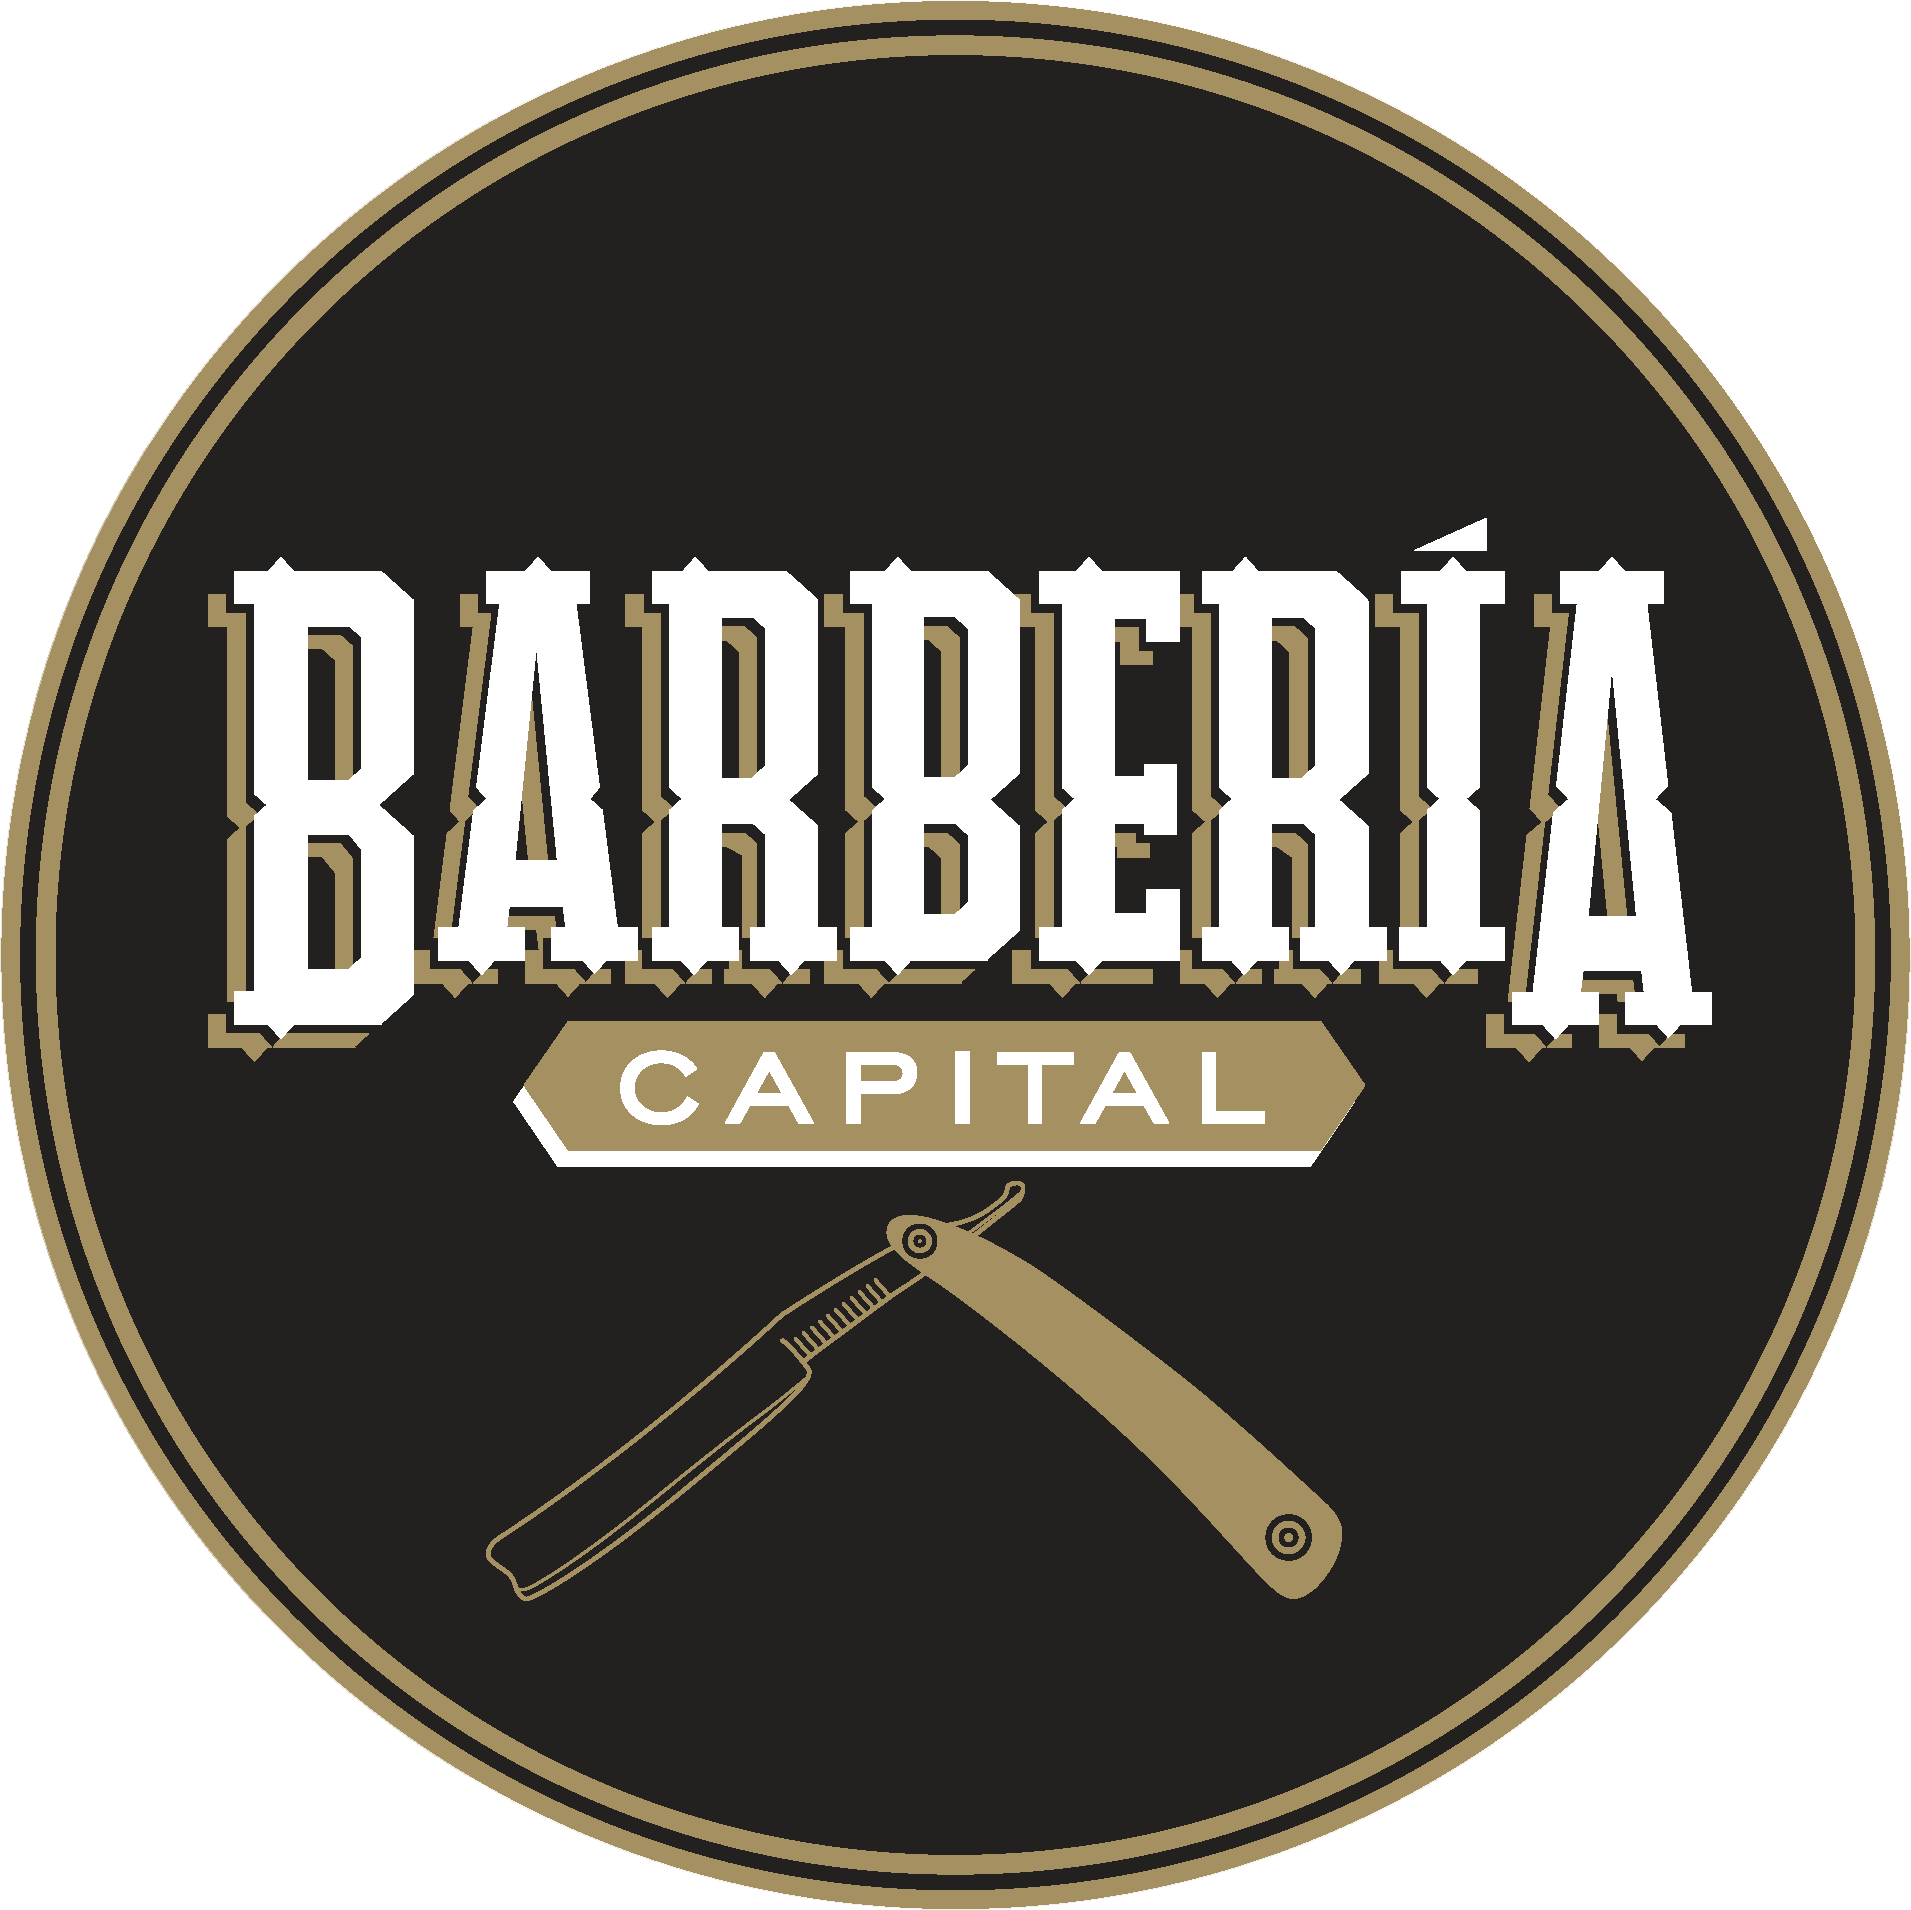 Capital Barber Shop / BBL Arquitectos